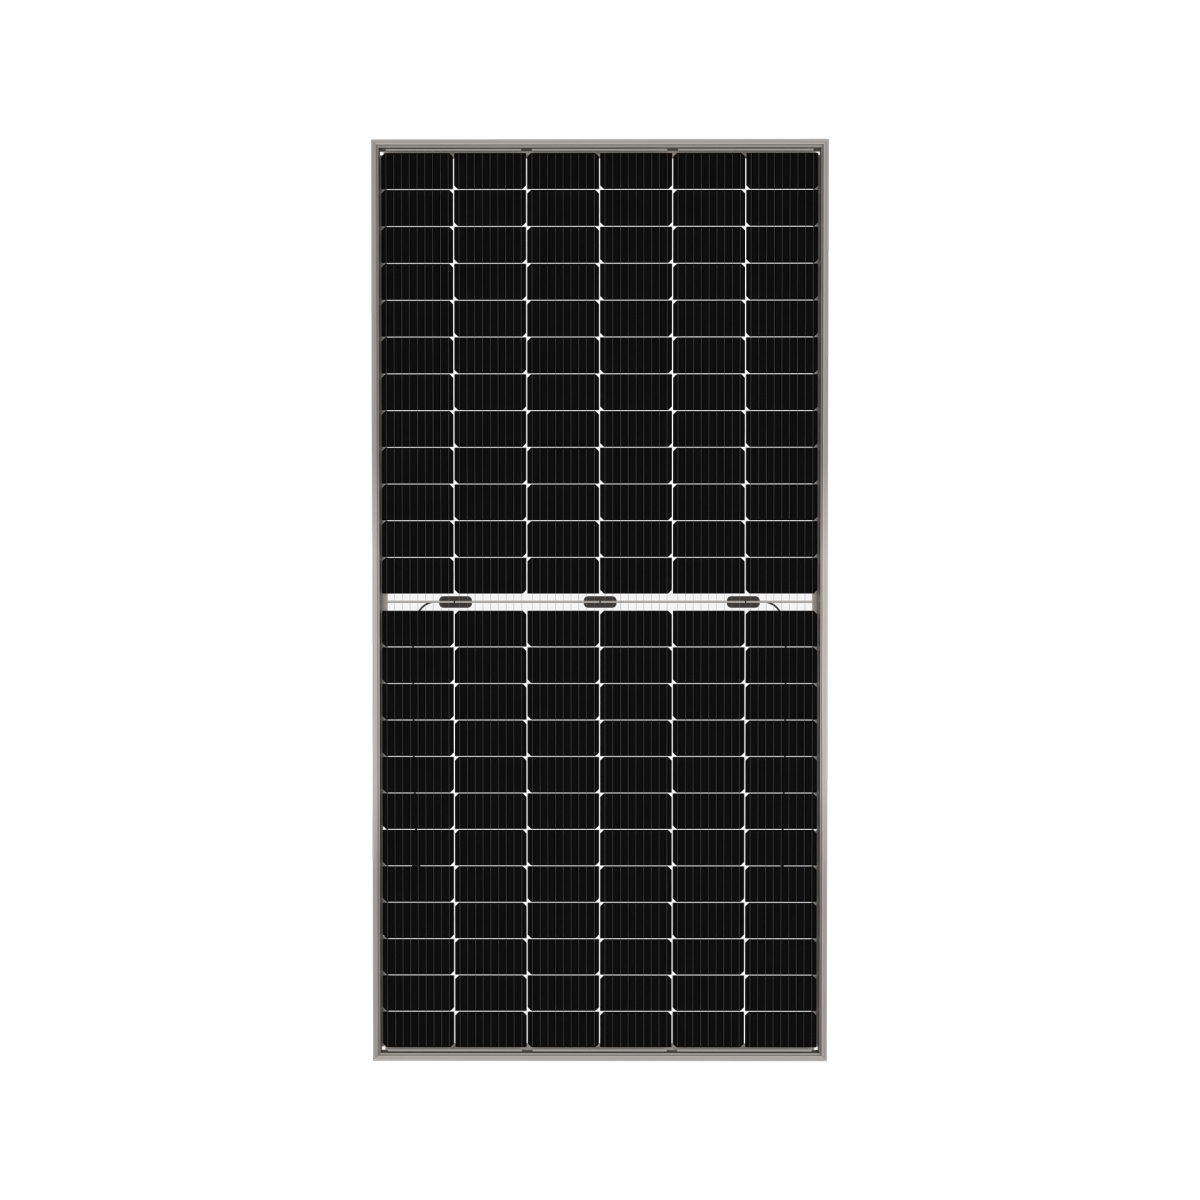 TommaTech 440Wp M6 144PM Cells Bifacial Half-Cut MB Solar Panel